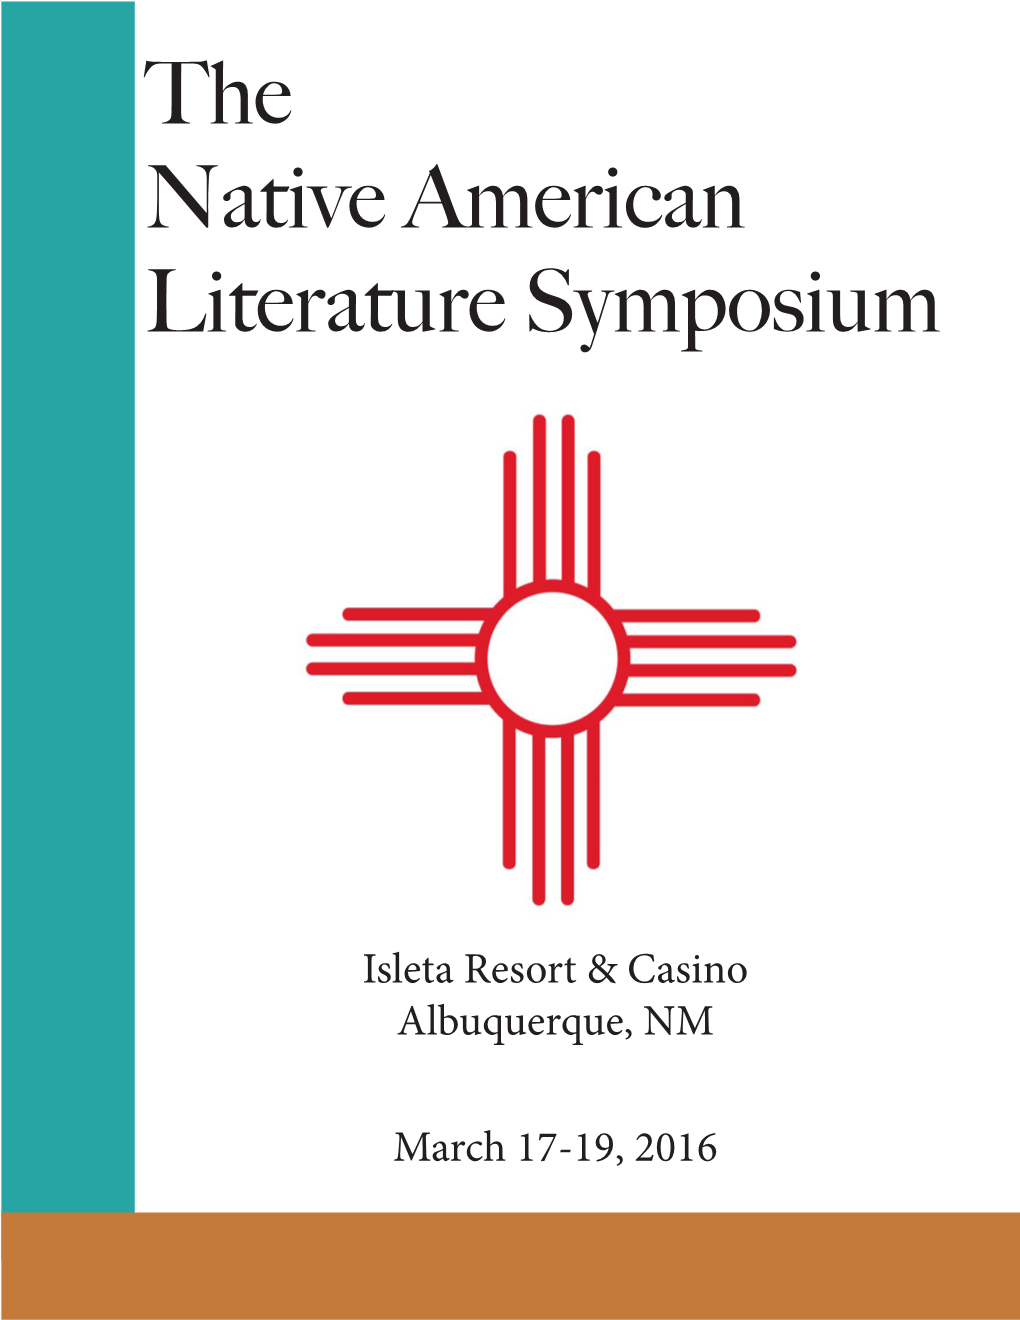 The Native American Literature Symposium